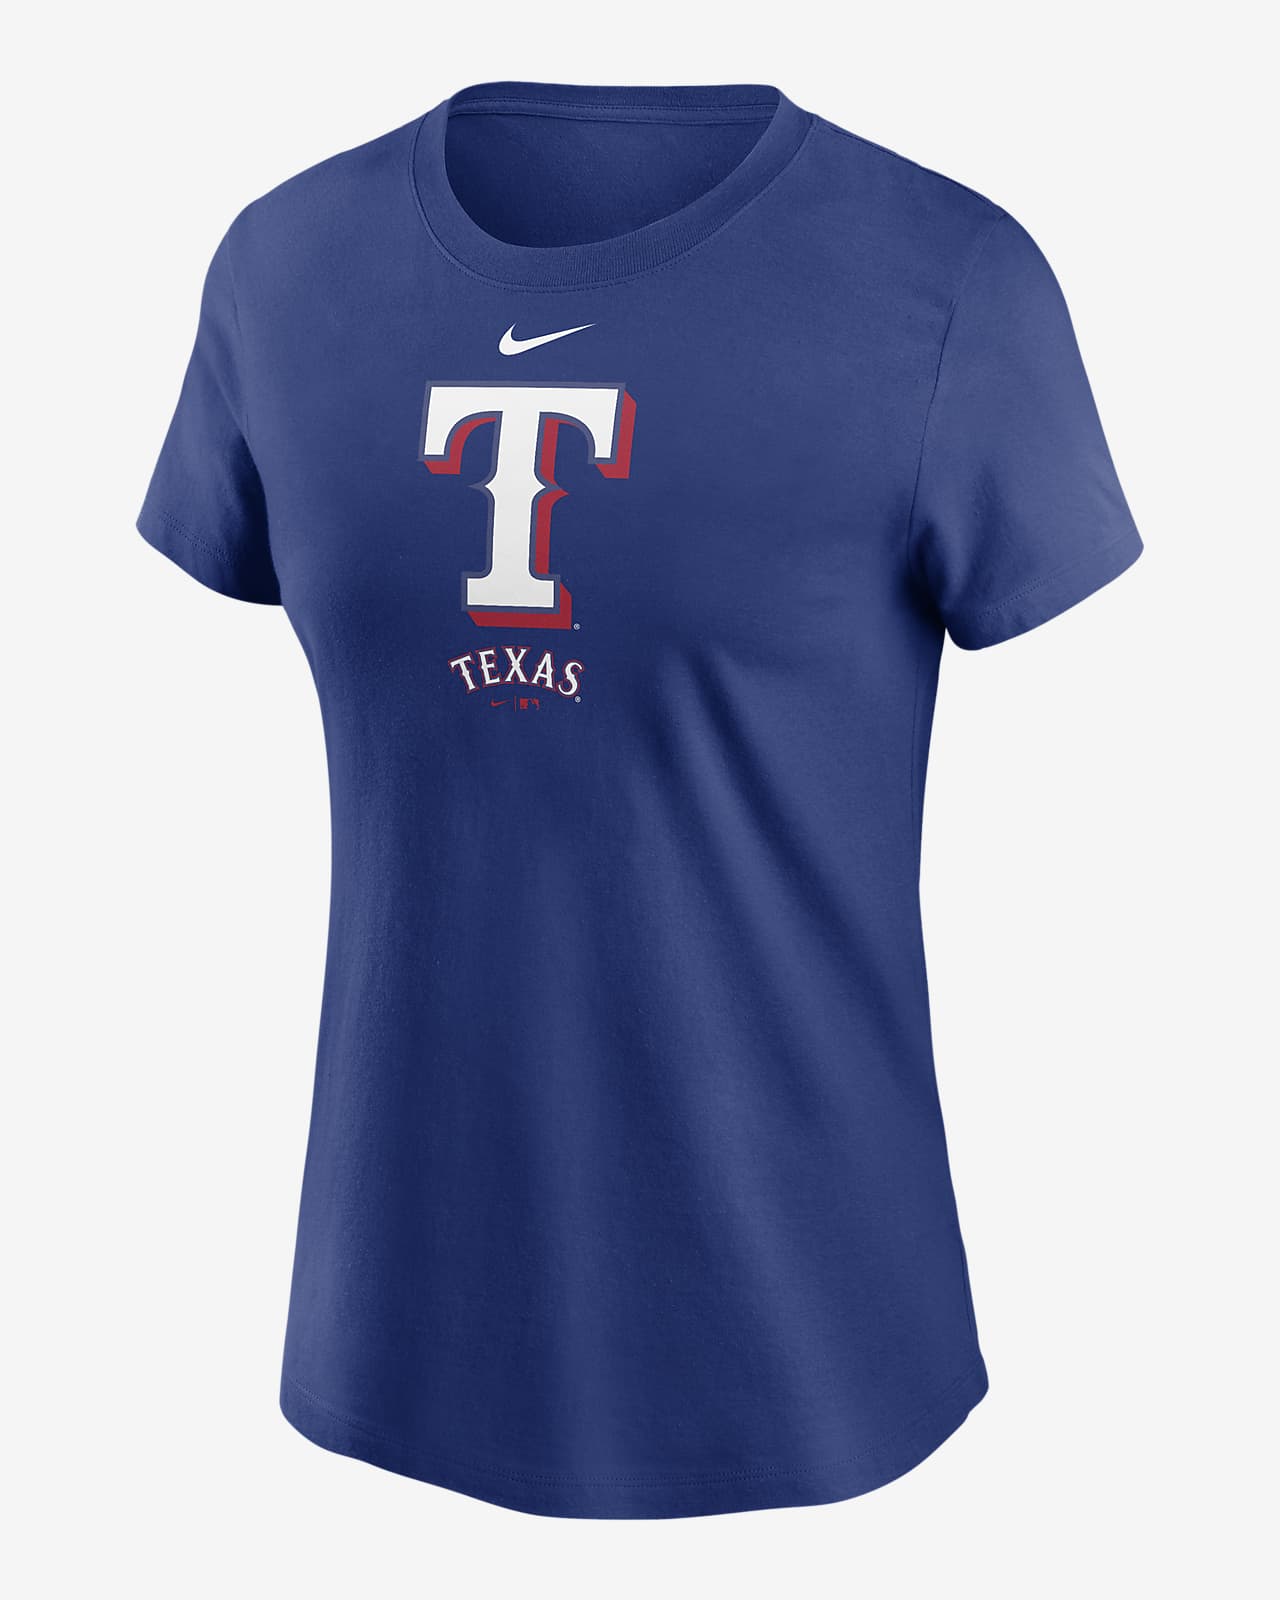 Official Women's Texas Rangers Gear, Womens Rangers Apparel